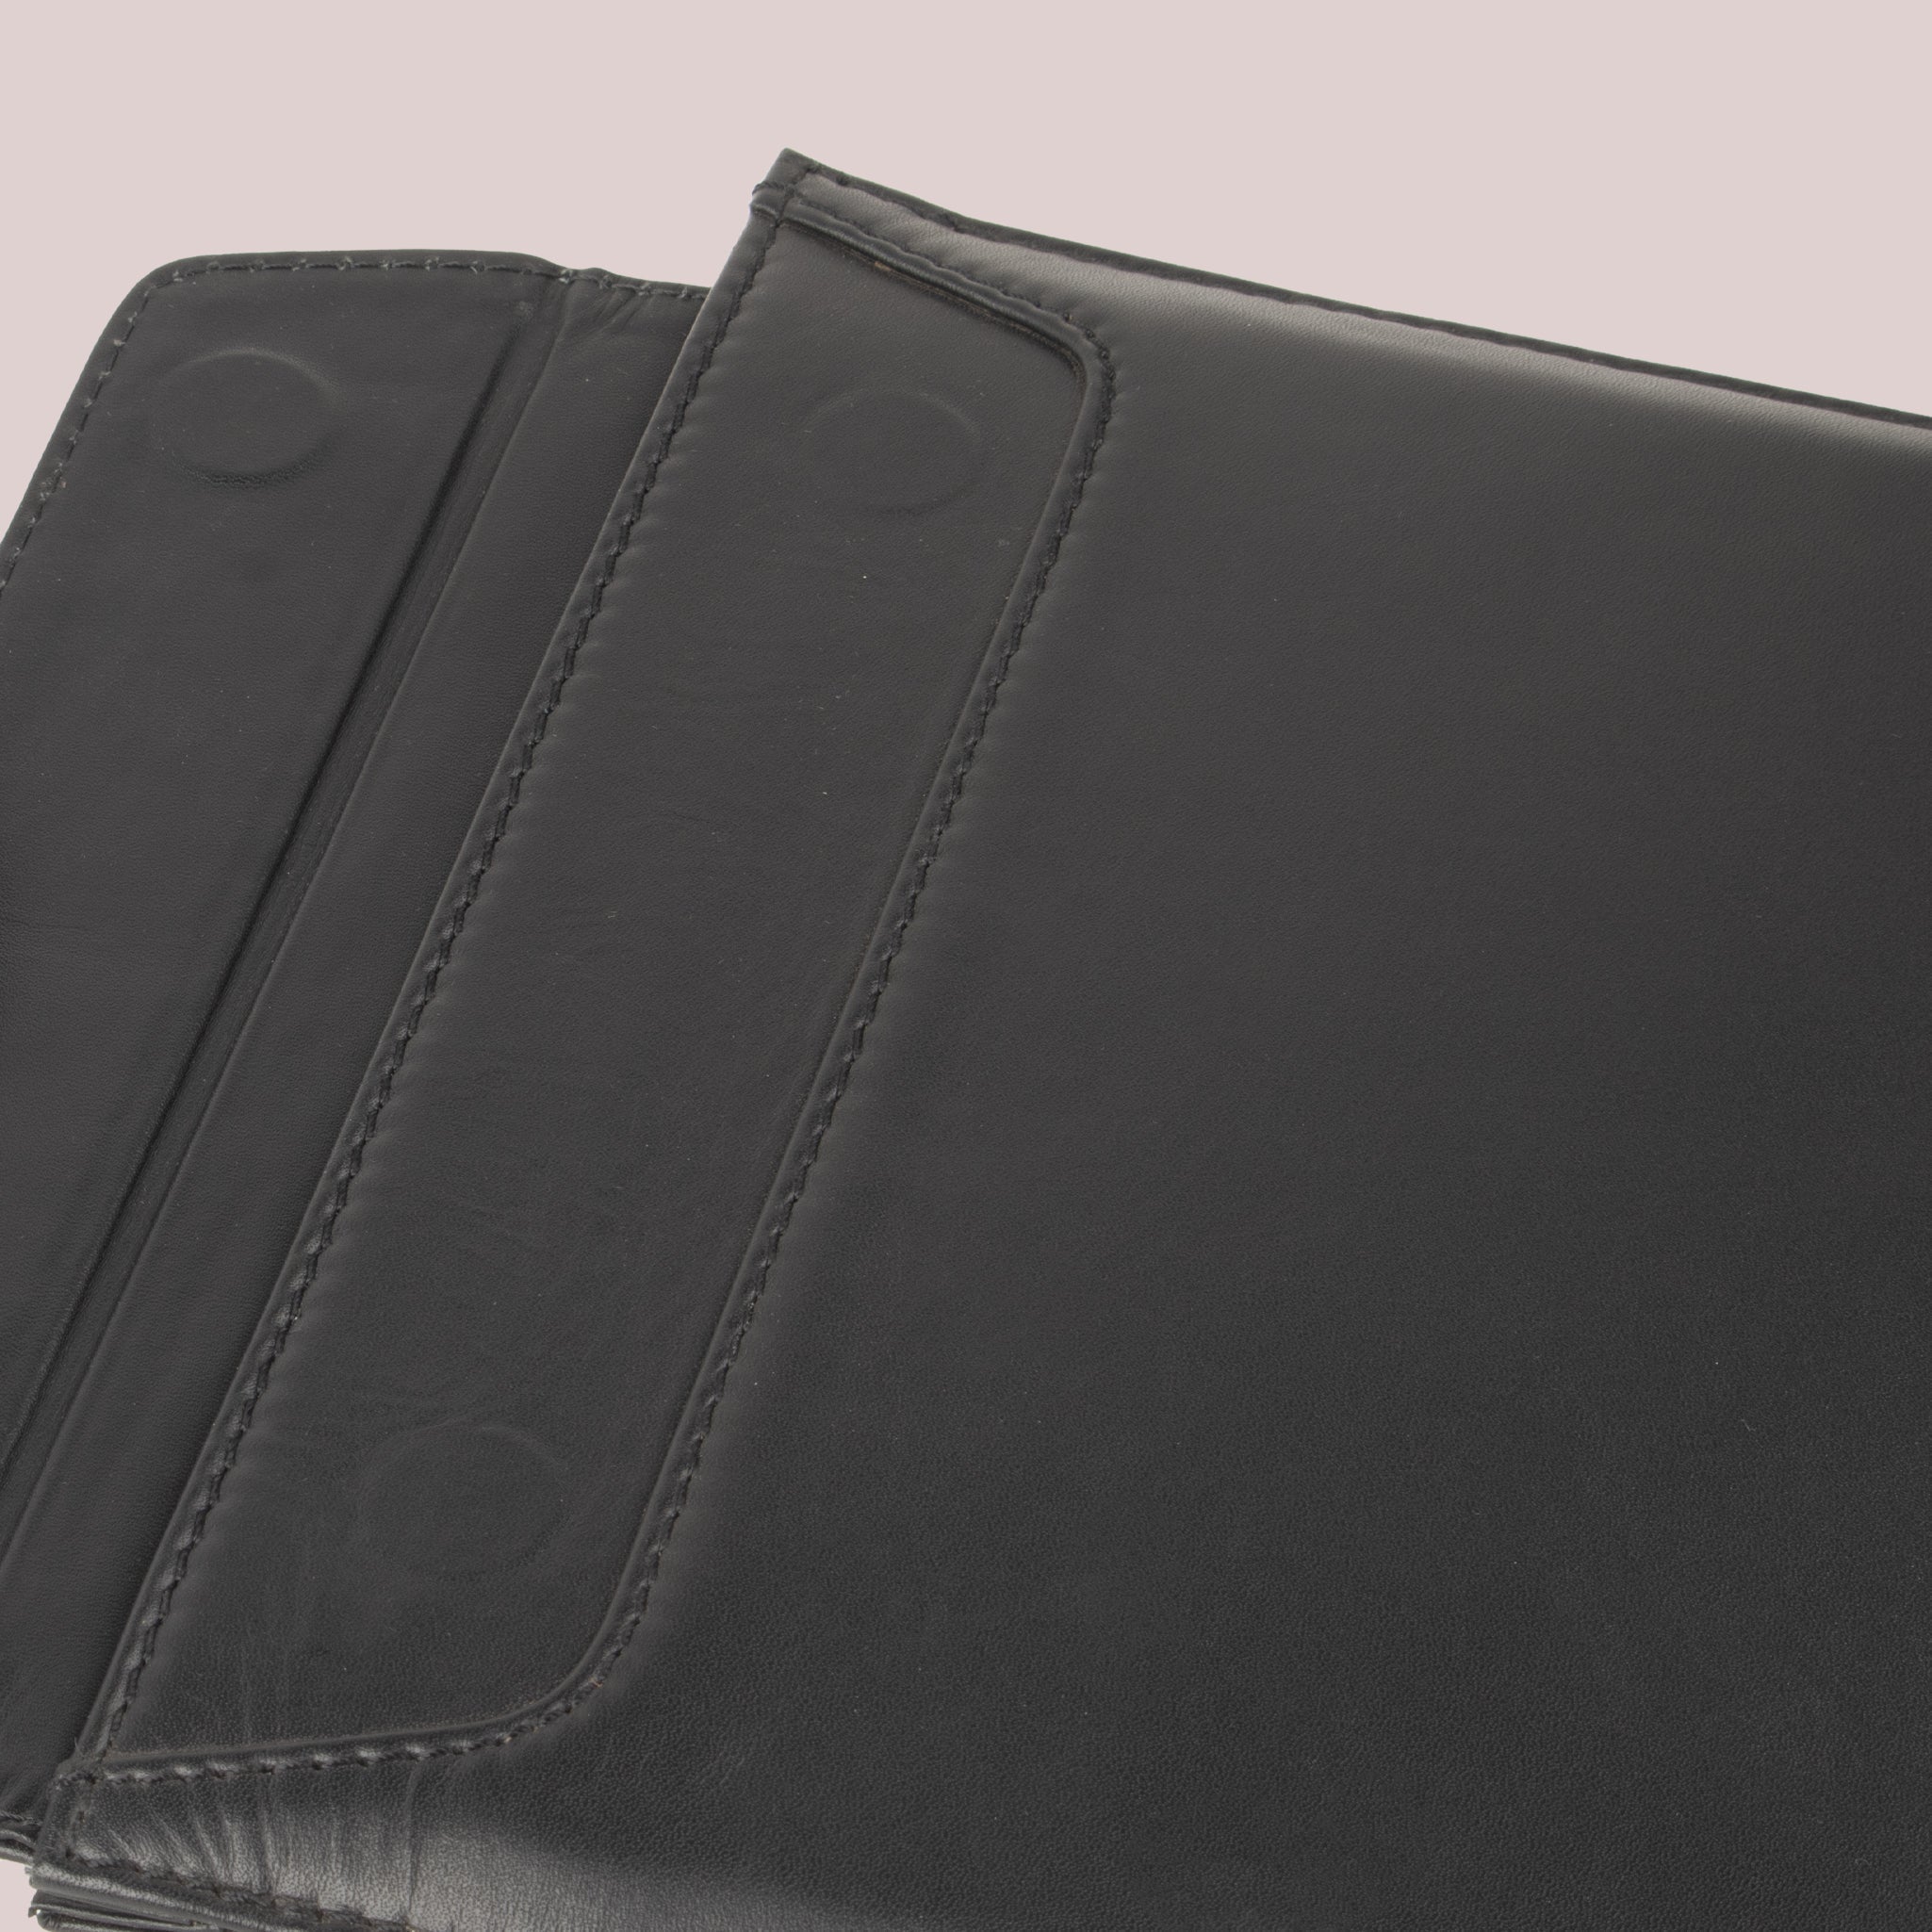 Get Black Color MacBook Air 13 Note Sleeves